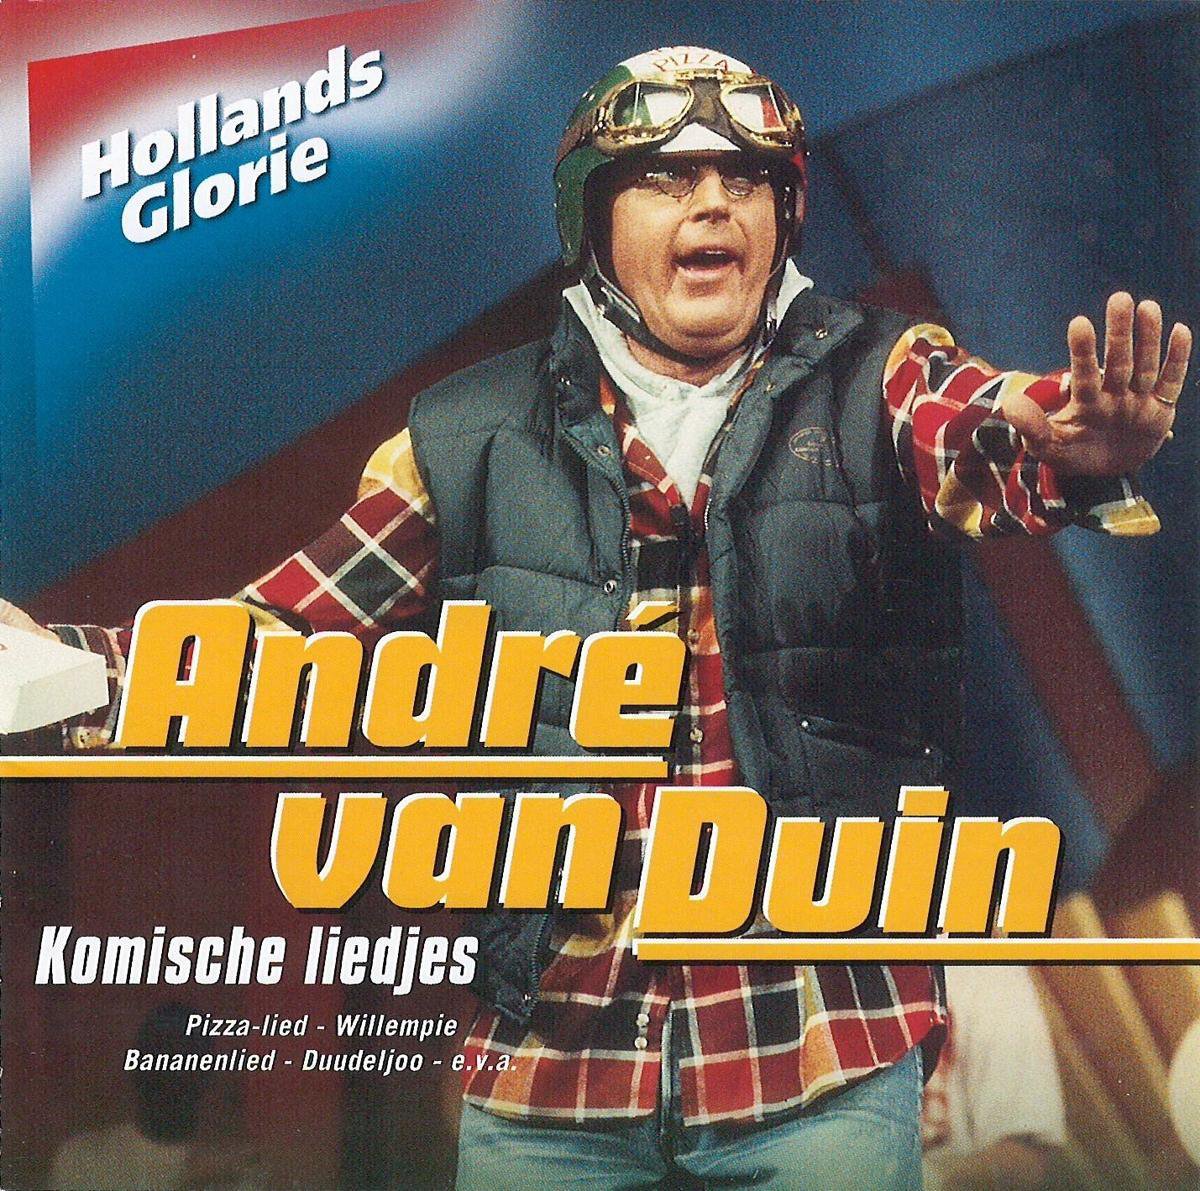 Hollands Glorie - Andre Van Duin